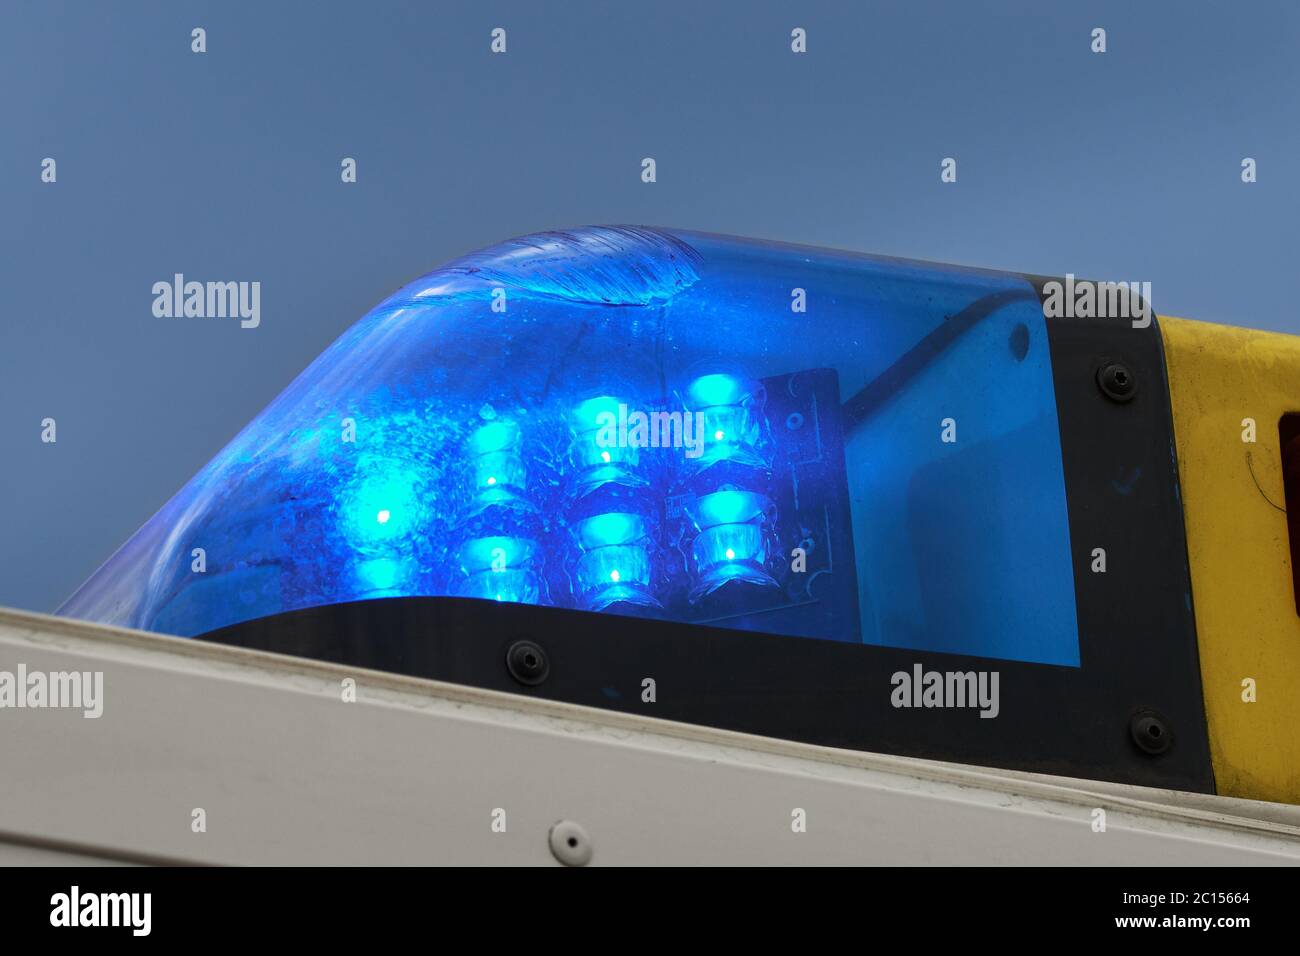 Gros plan de la lumière bleue allumée du véhicule d'urgence ou de la voiture d'ambulance contre le ciel bleu Banque D'Images